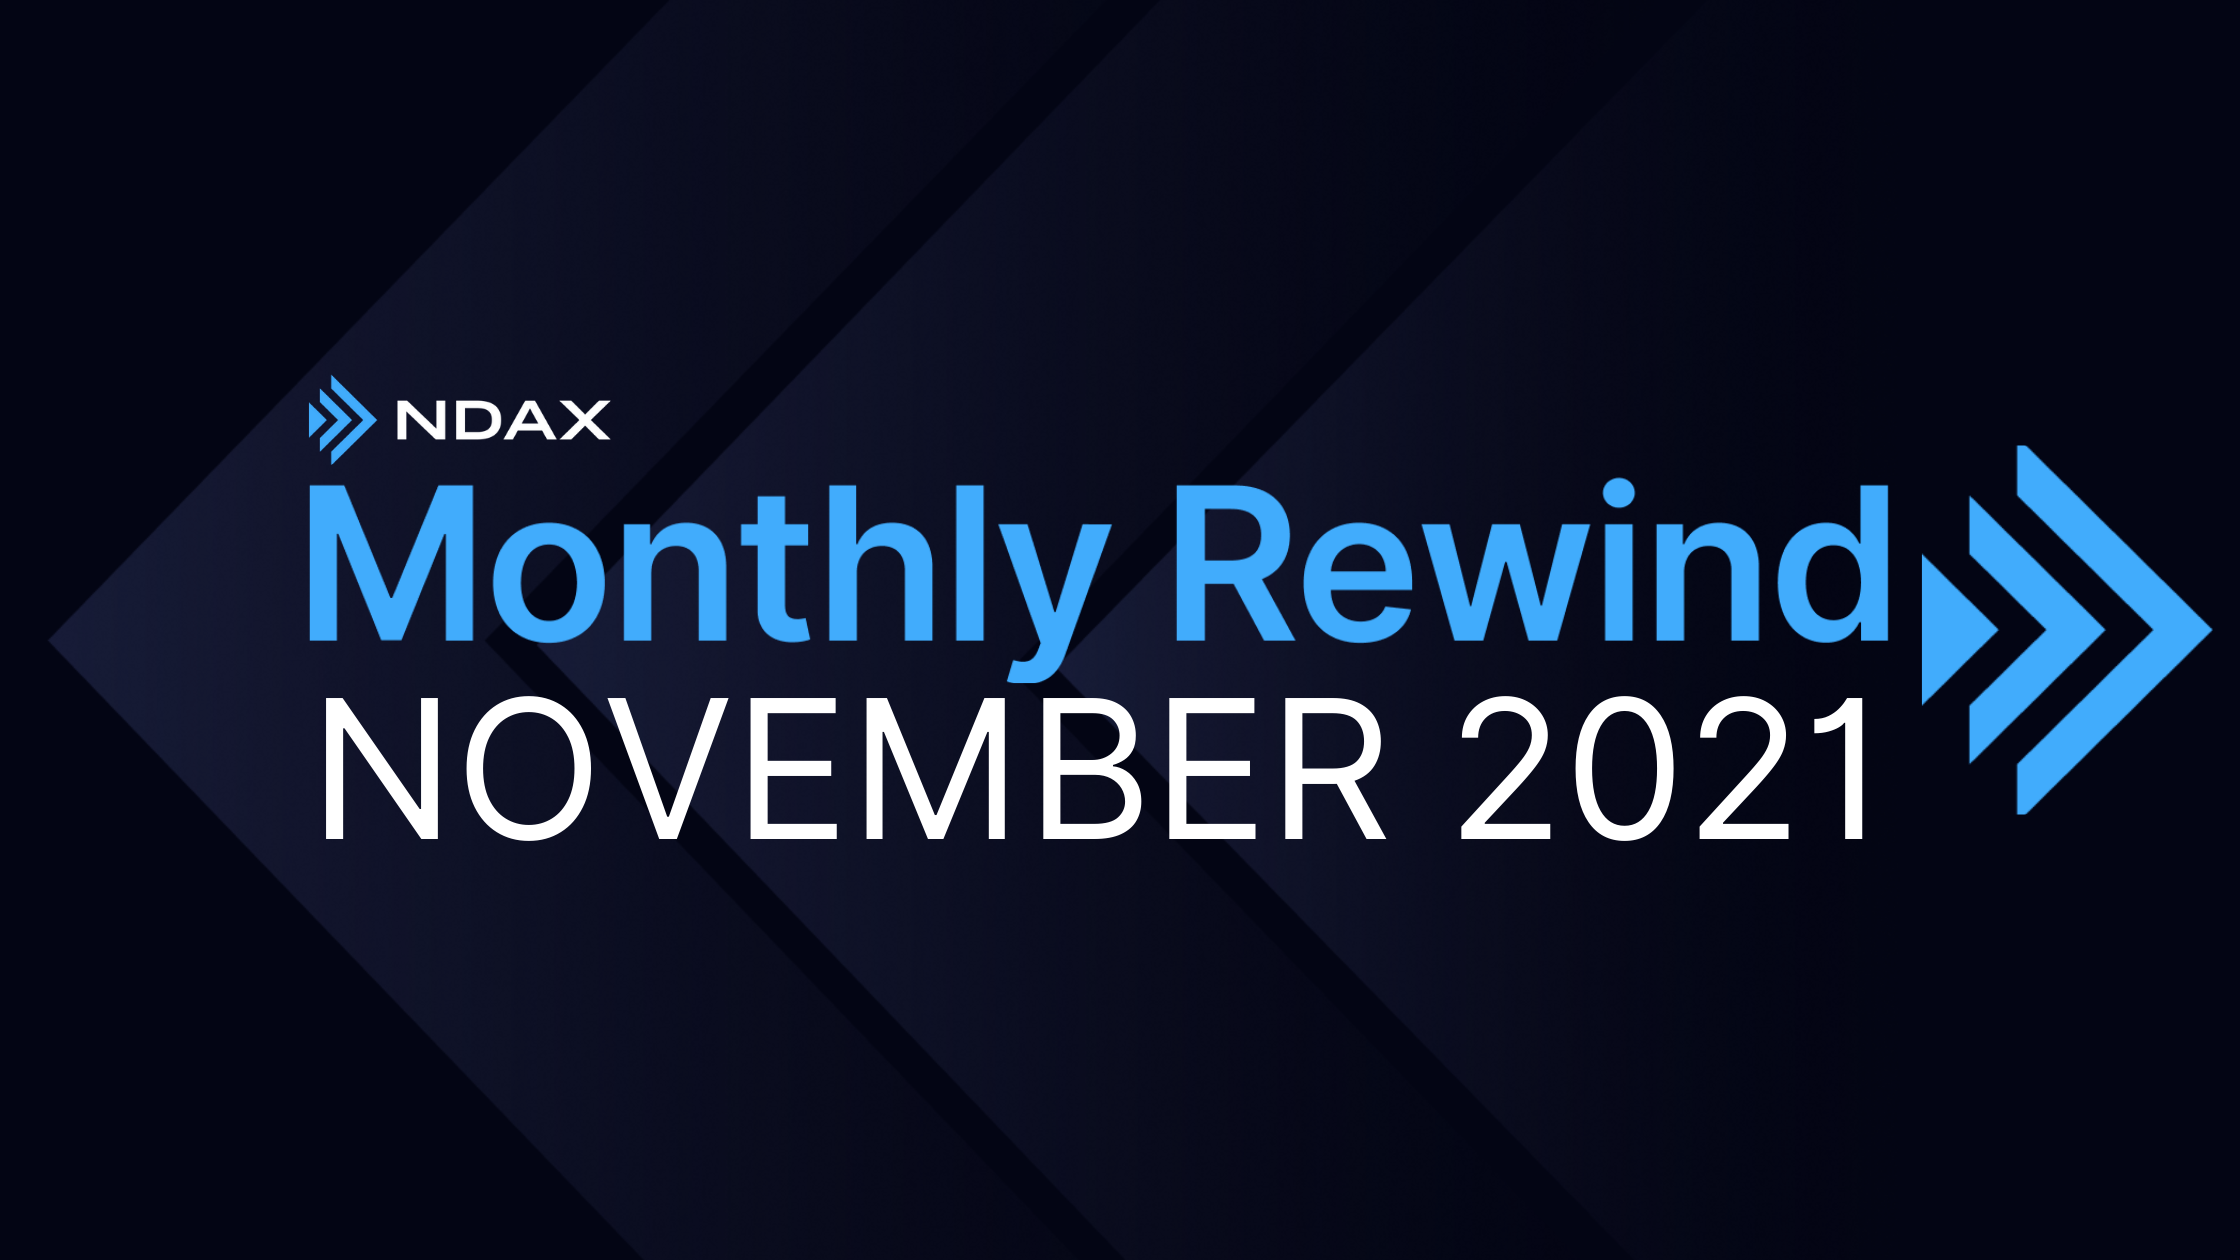 NDAX Monthly Rewind - November 2021